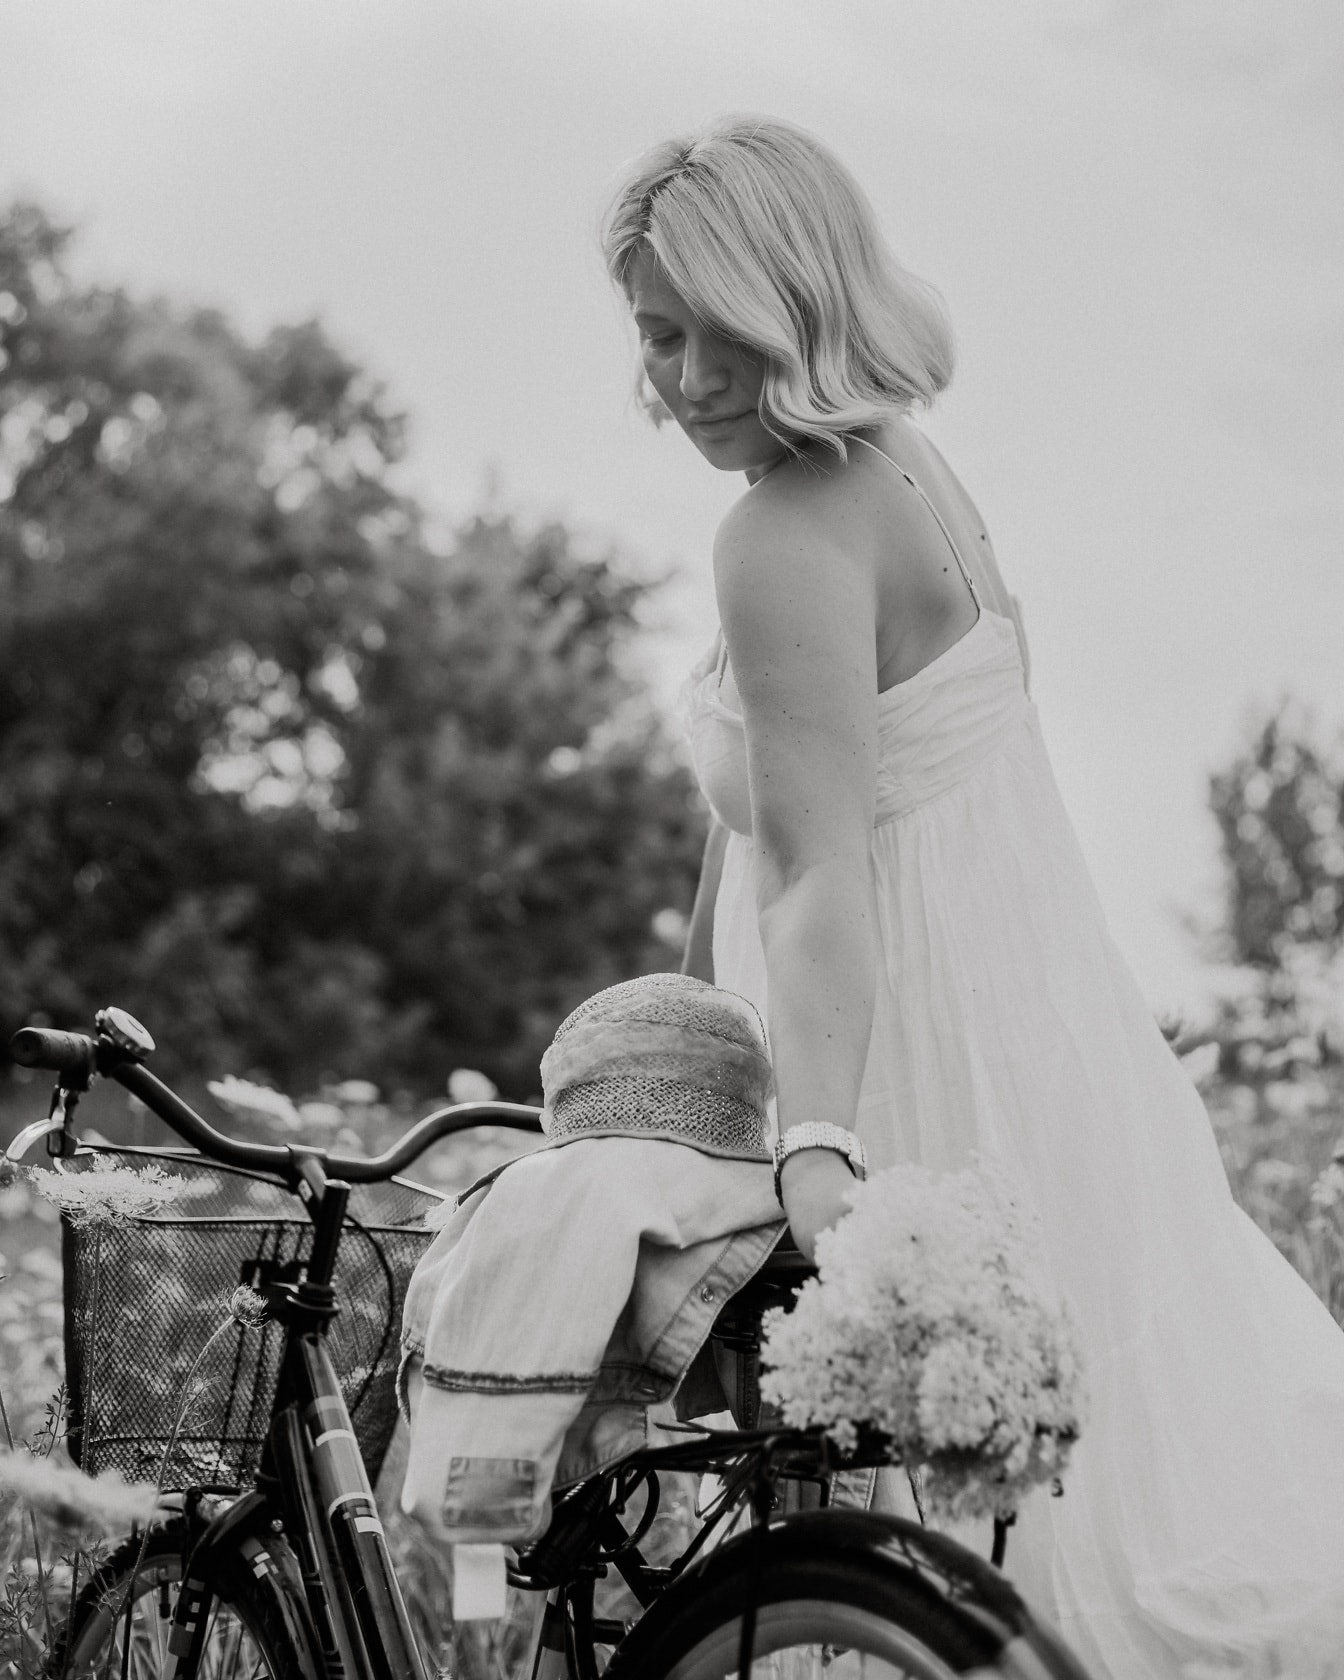 Snygg blondin i vit klänning för tappning med cykel på landsbygden monokromt foto